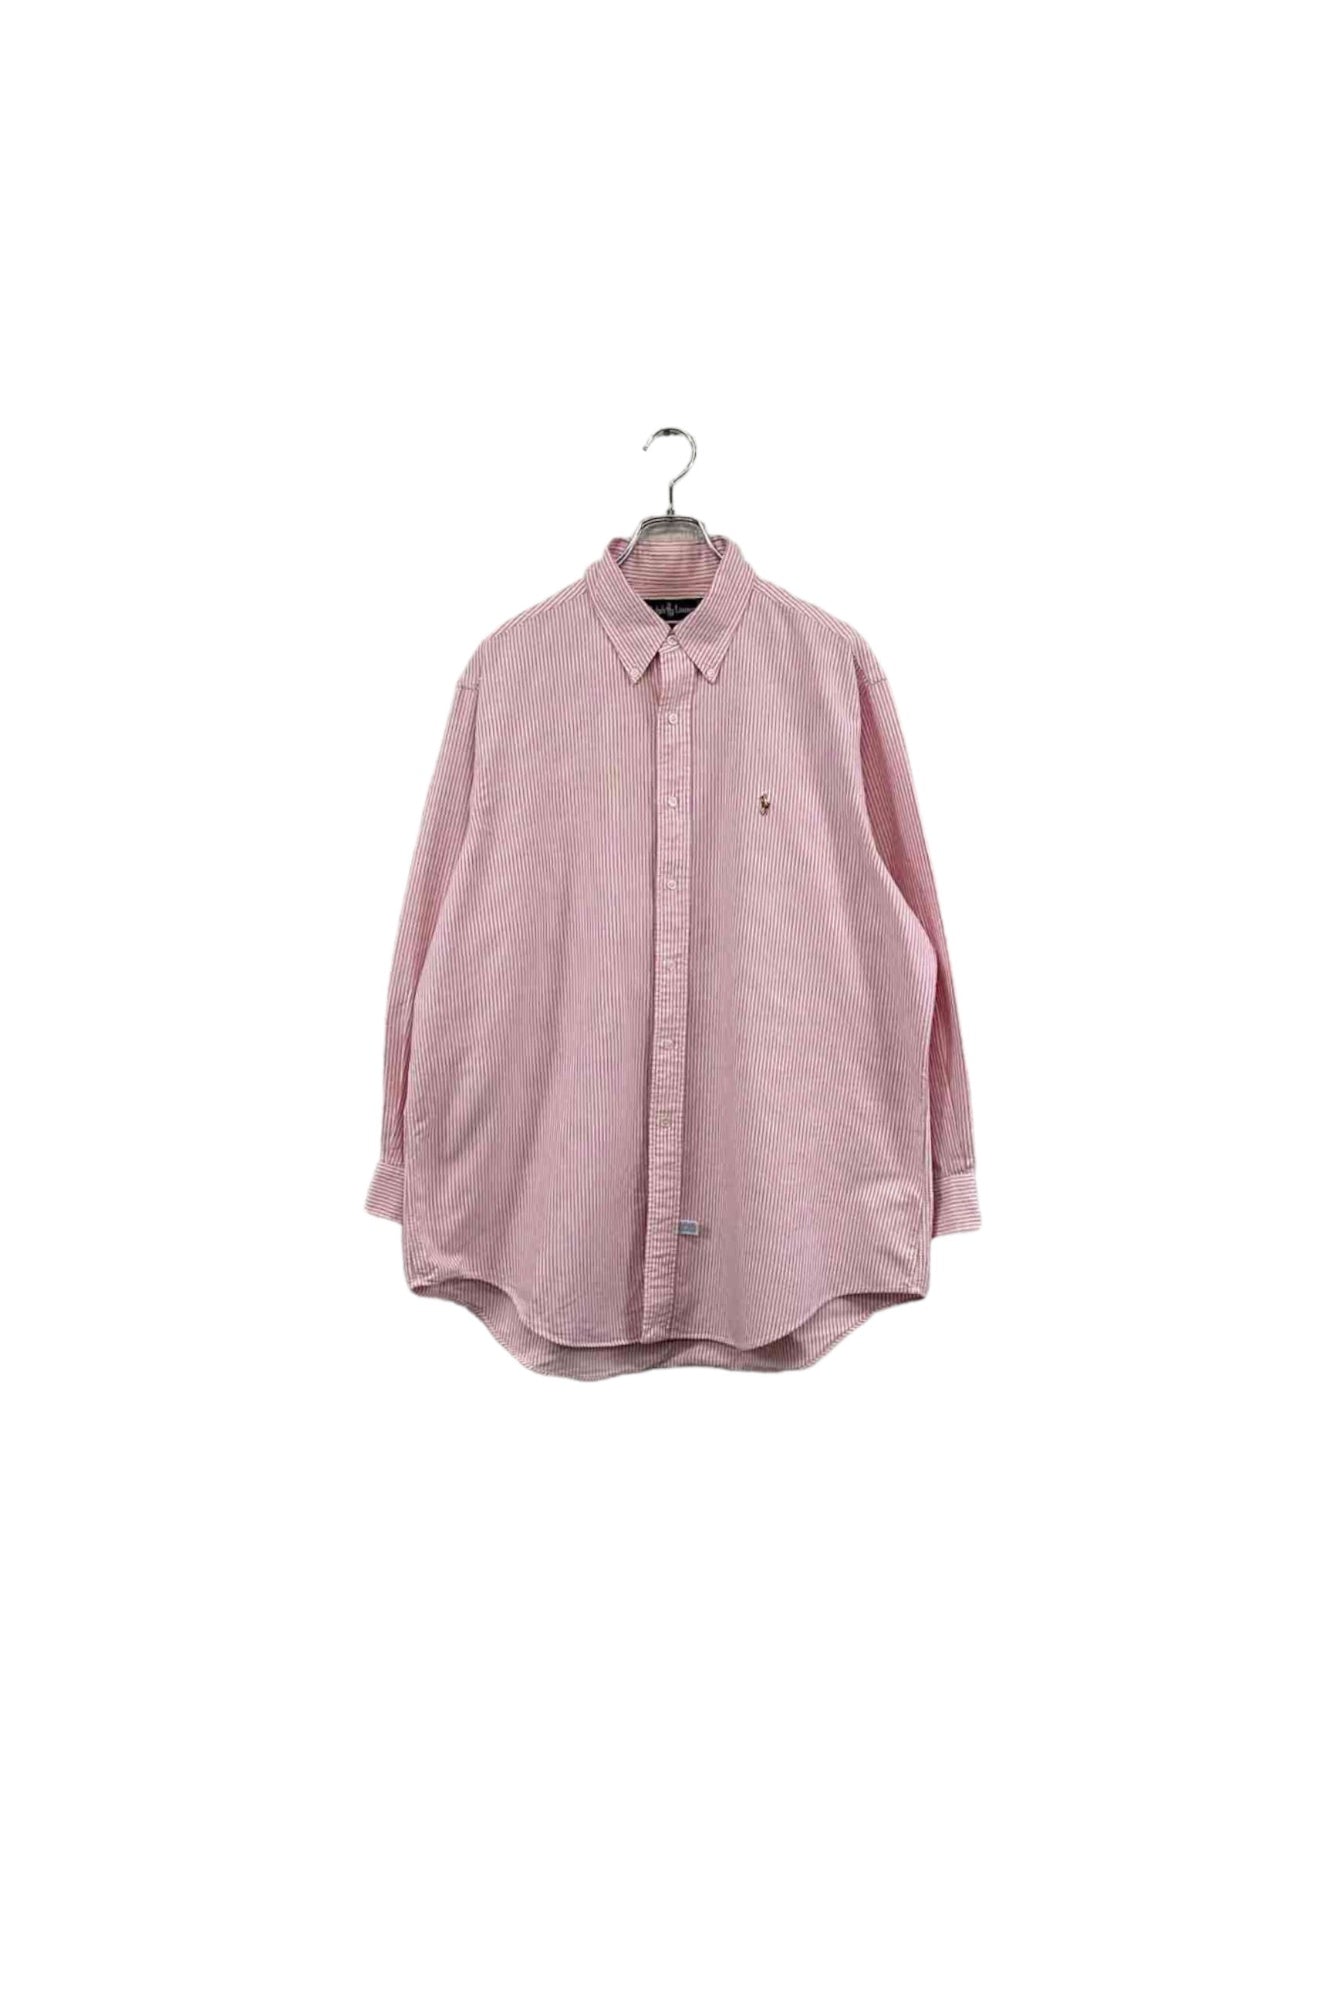 90s Ralph Lauren pink striped shirt